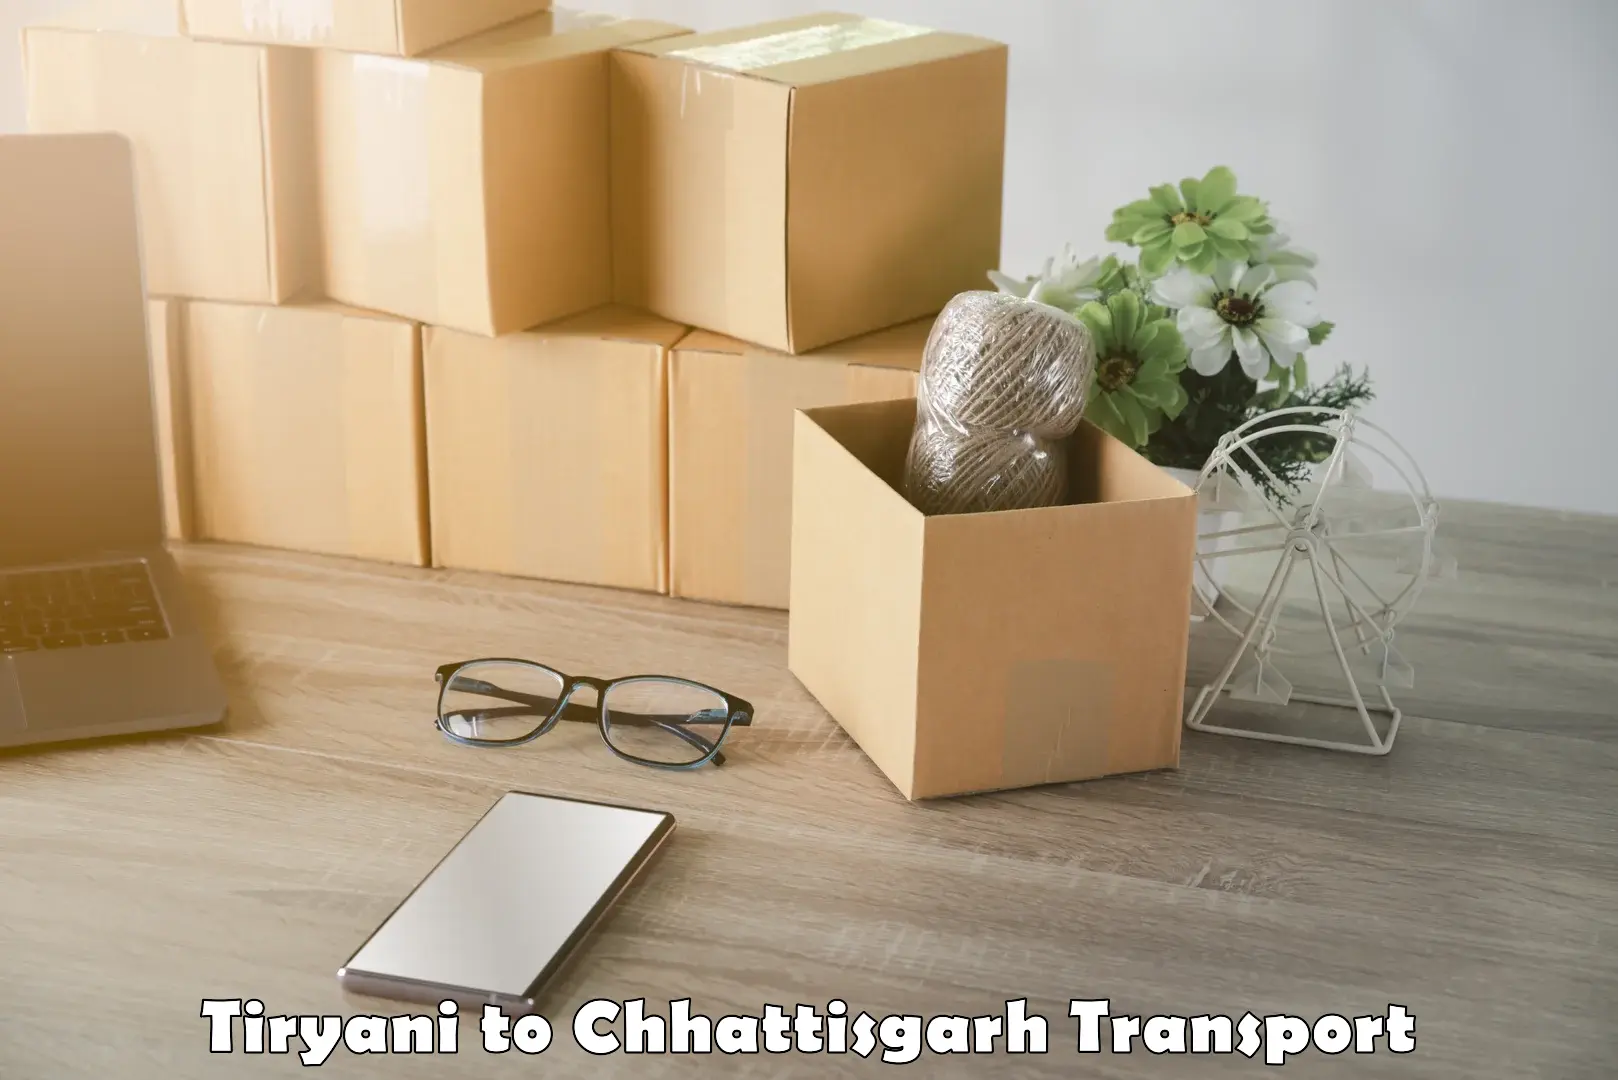 Furniture transport service Tiryani to Ratanpur